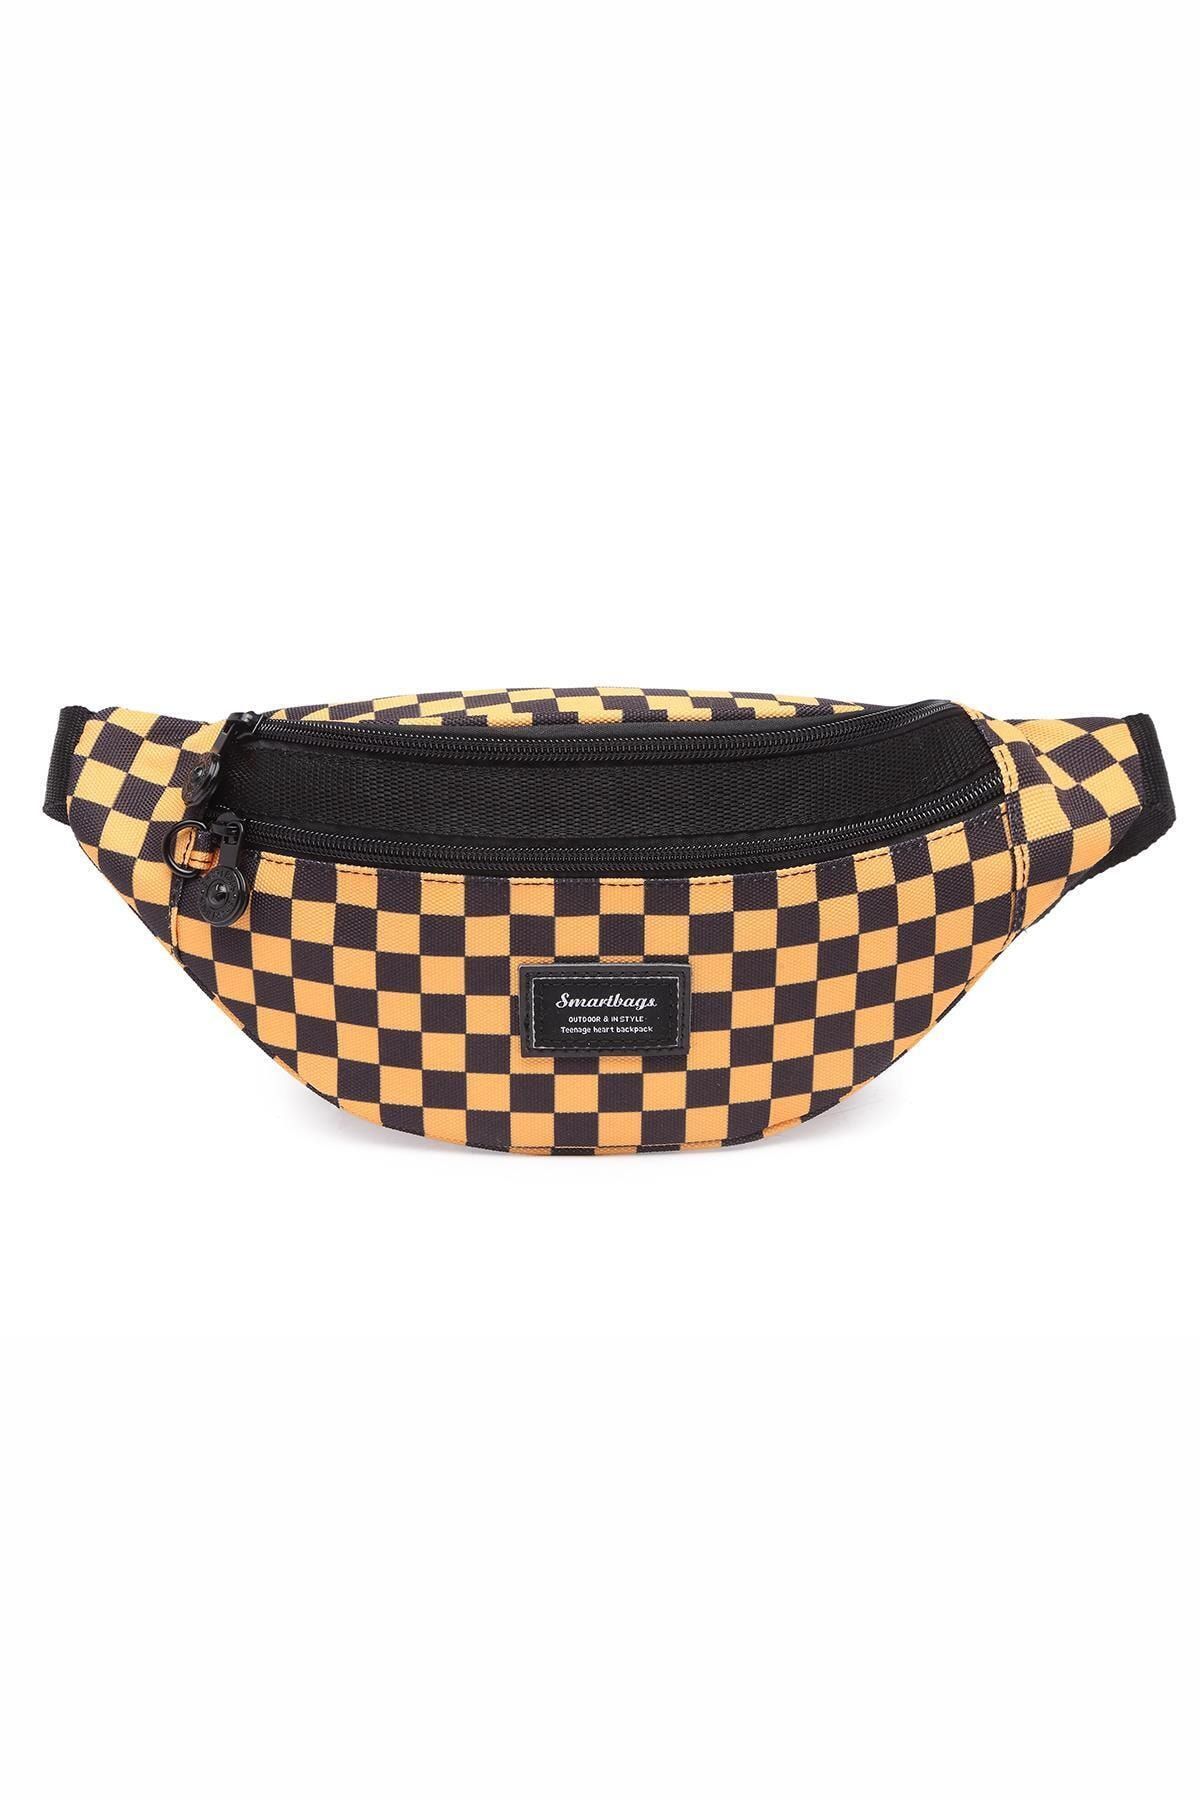 Smart Bags Smbyb3030-5147 Siyah/Sarı Kadın Bel Çantası